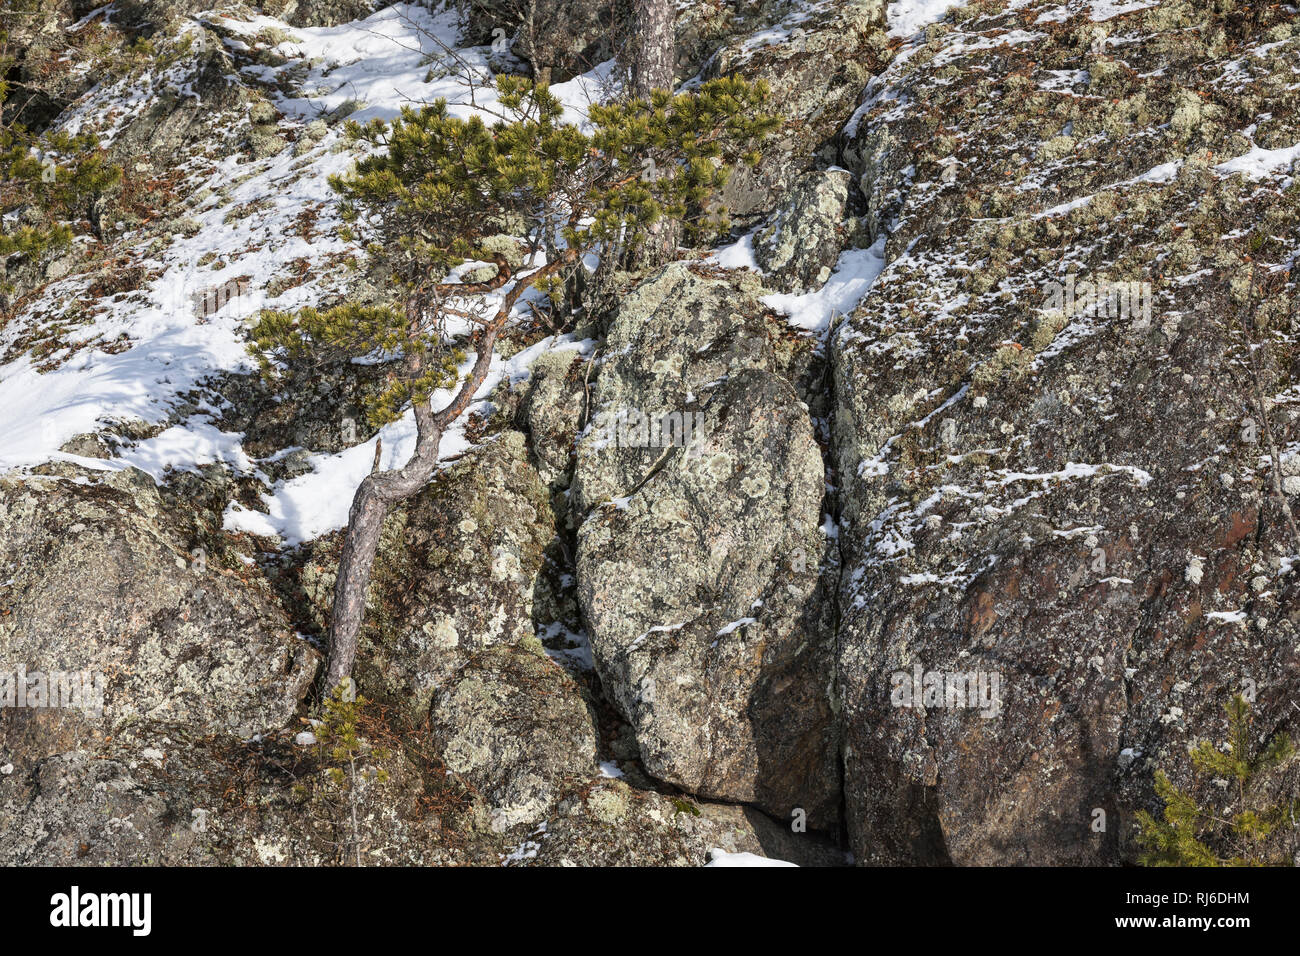 Finnland, Kiefer einzelne auf Felsen im Winter Foto de stock